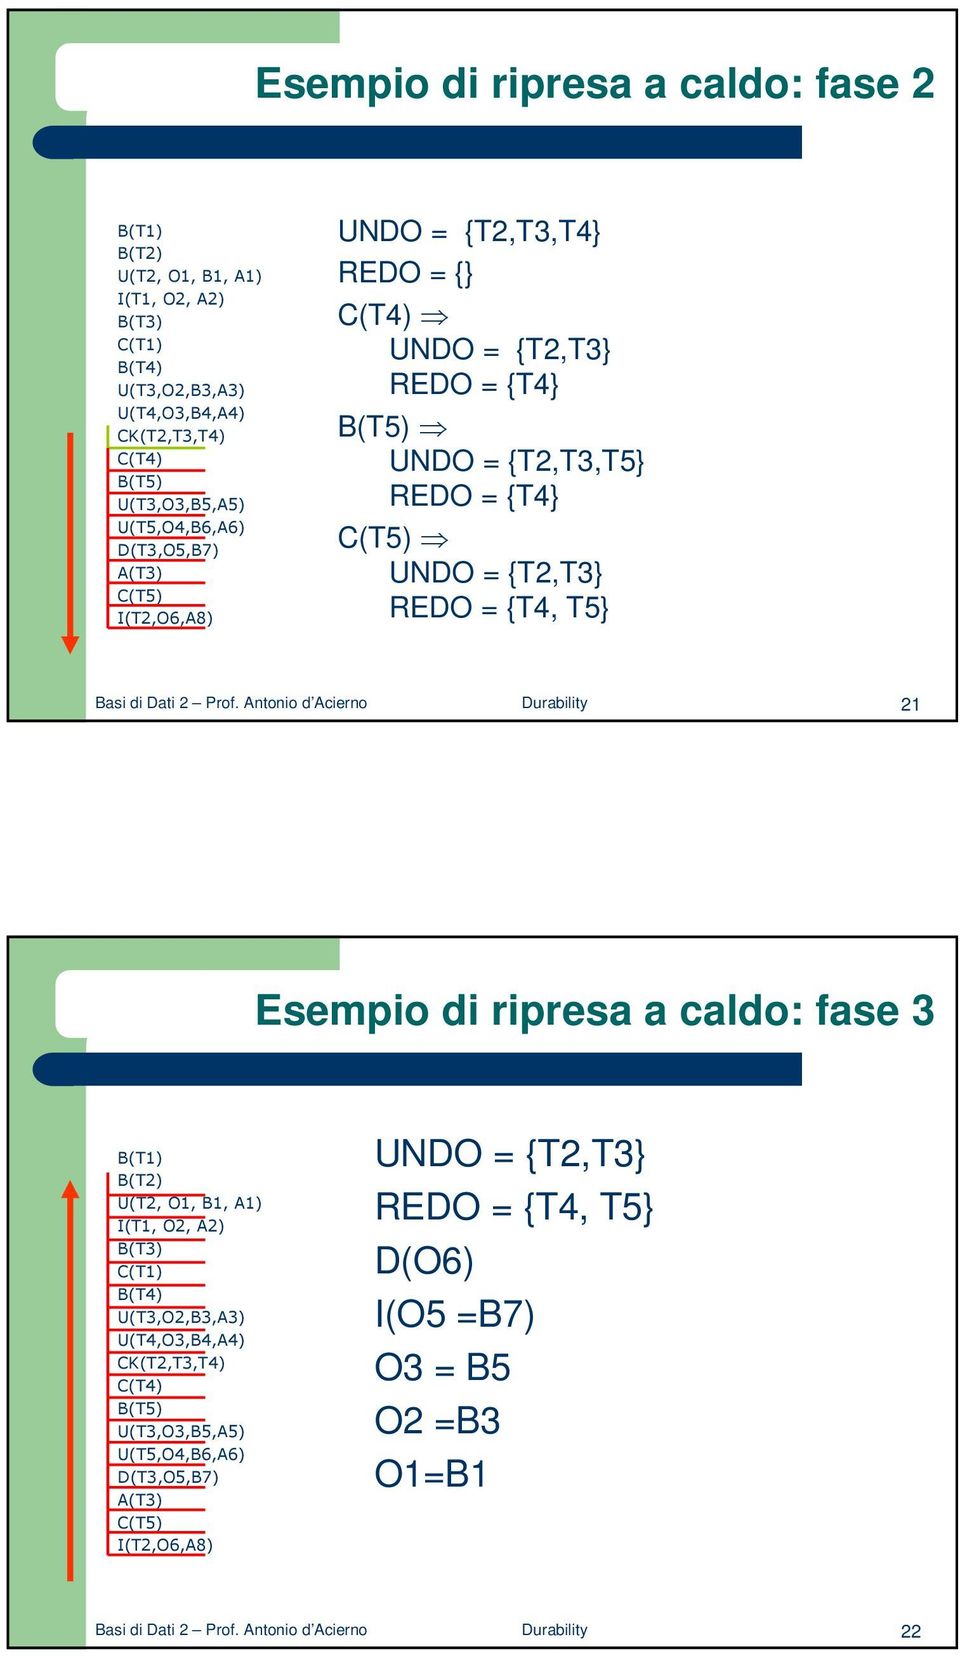 Prof. Antonio d Acierno Durability 21 Esempio di ripresa a caldo: fase 3 B(T1) B(T2) U(T2, O1, B1, A1) I(T1, O2, A2) B(T3) C(T1) B(T4) U(T3,O2,B3,A3) U(T4,O3,B4,A4) CK(T2,T3,T4) C(T4)